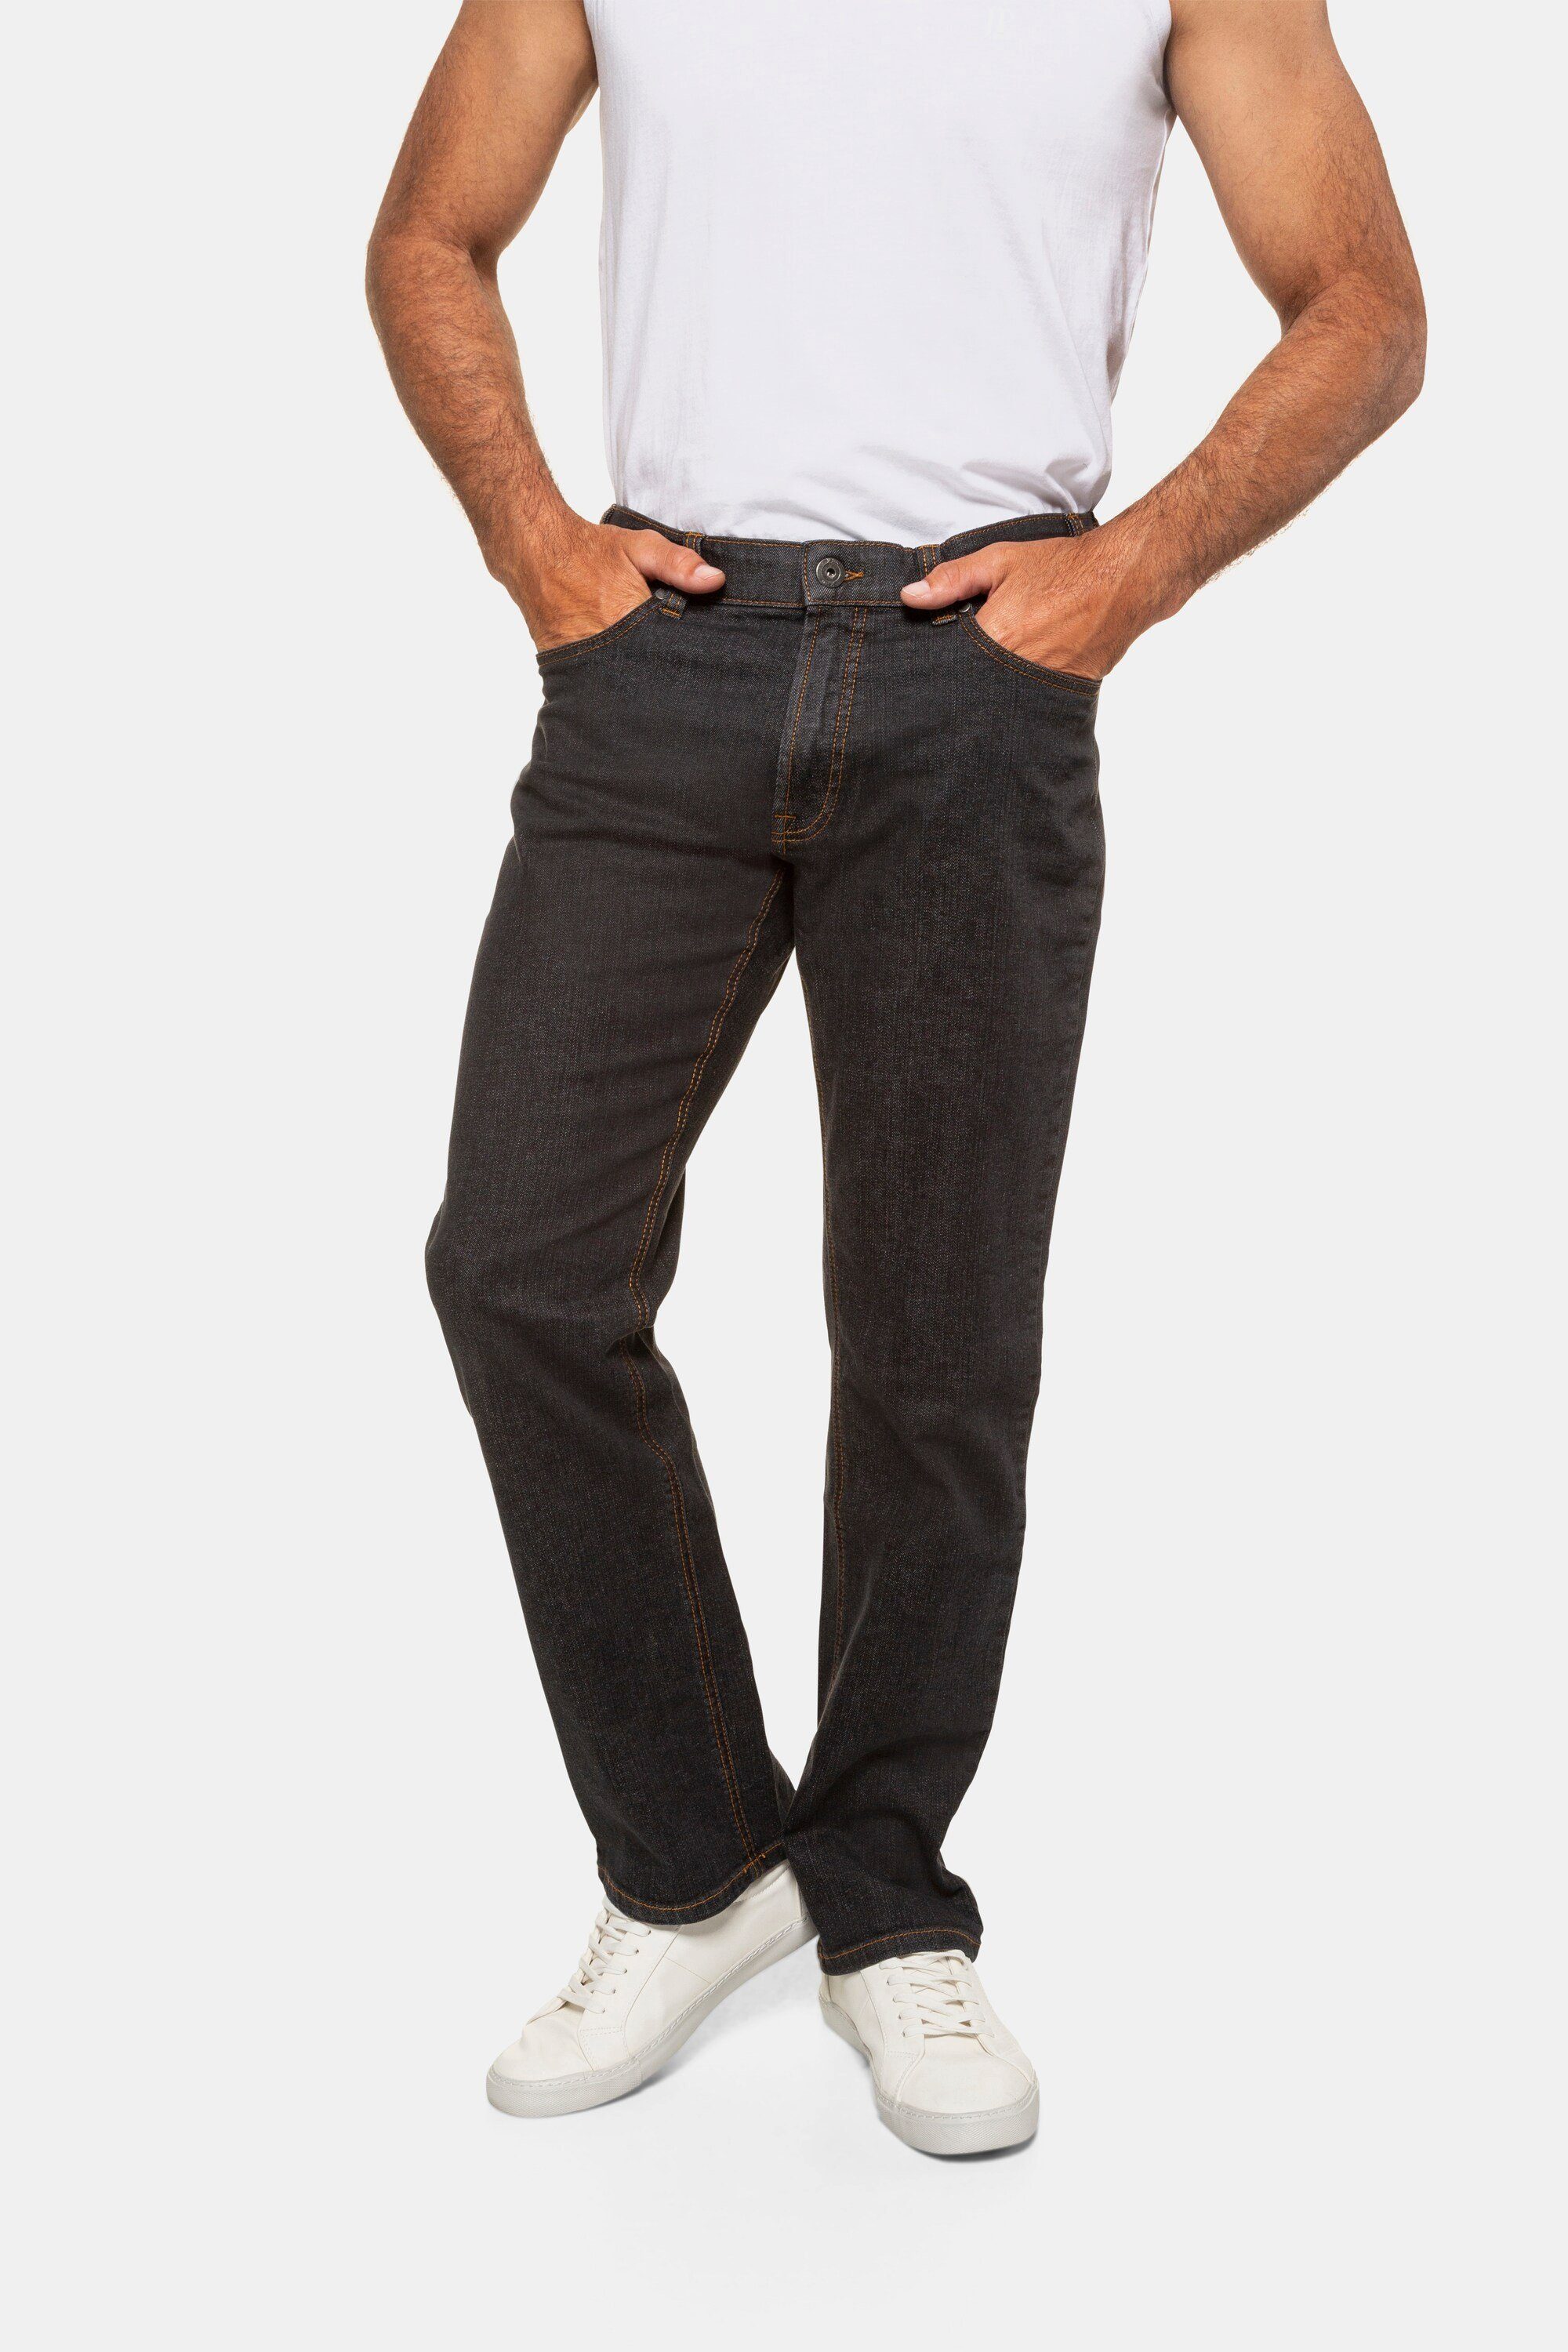 black Fit JP1880 5-Pocket Cargohose elastischer Jeans Komfortbund Regular